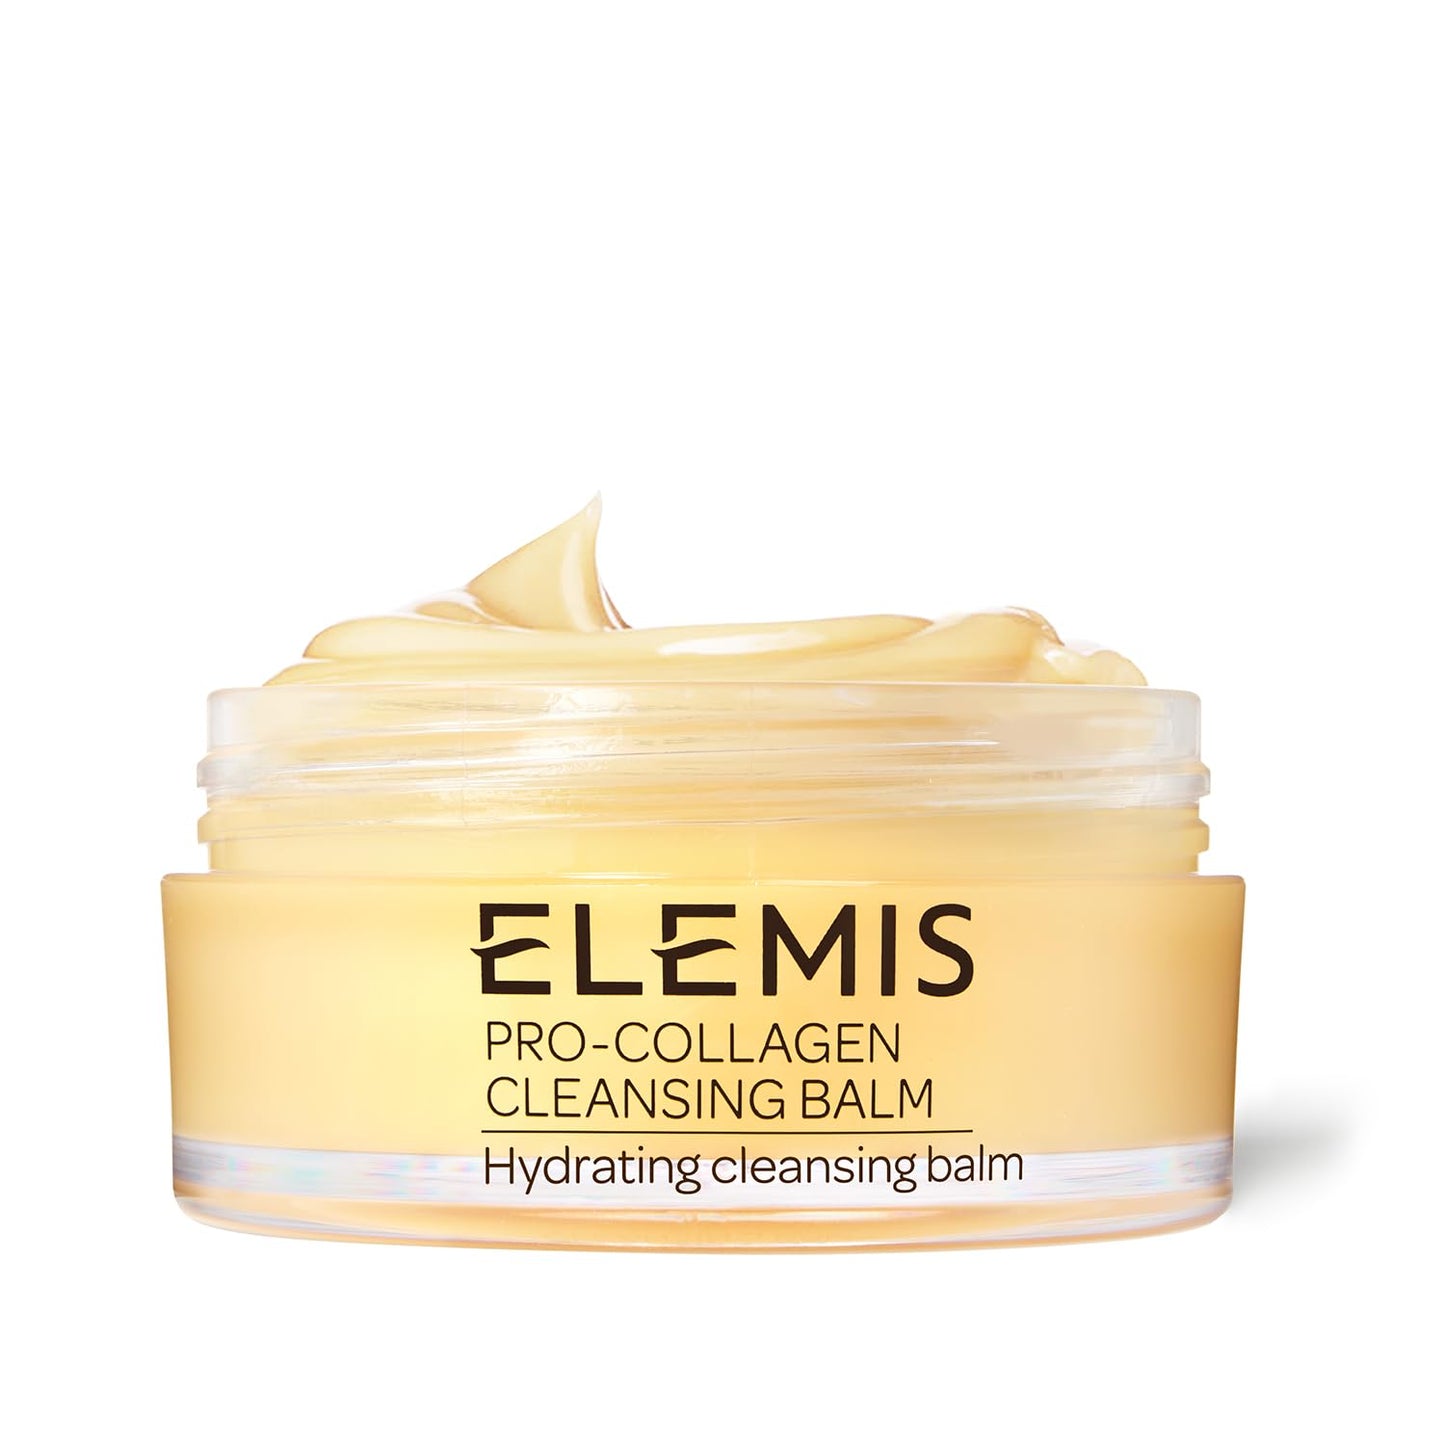 ELEMIS - Pro-Collagen Cleansing Balm | 100g